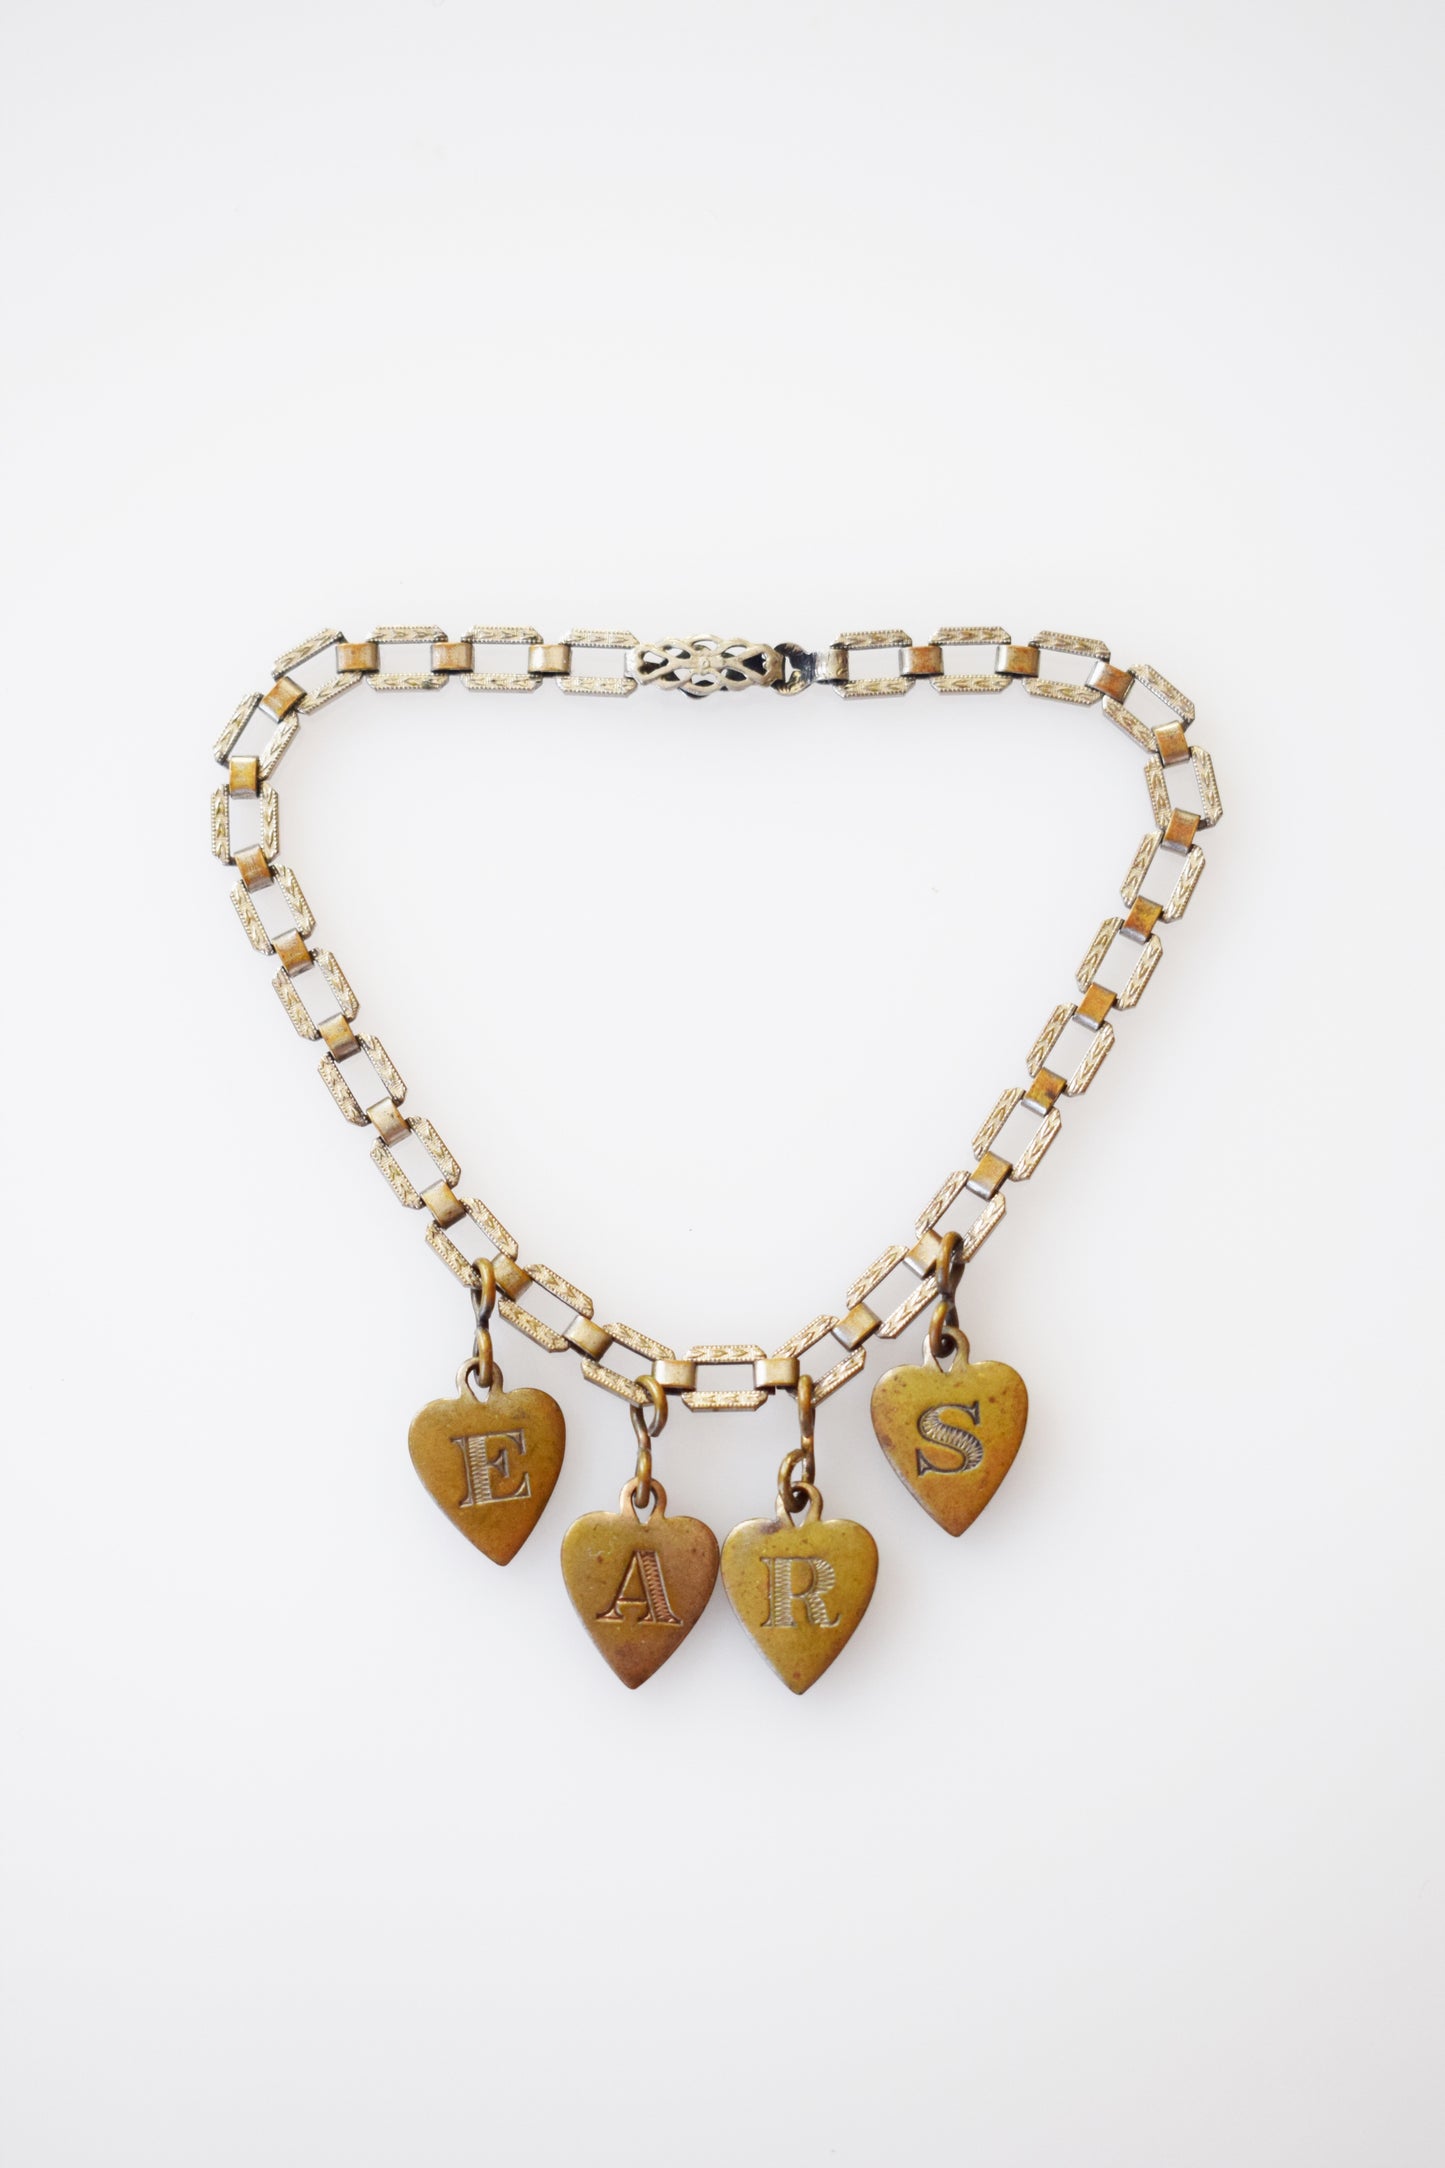 Art Deco "EARS" Sweetheart Charm Bracelet